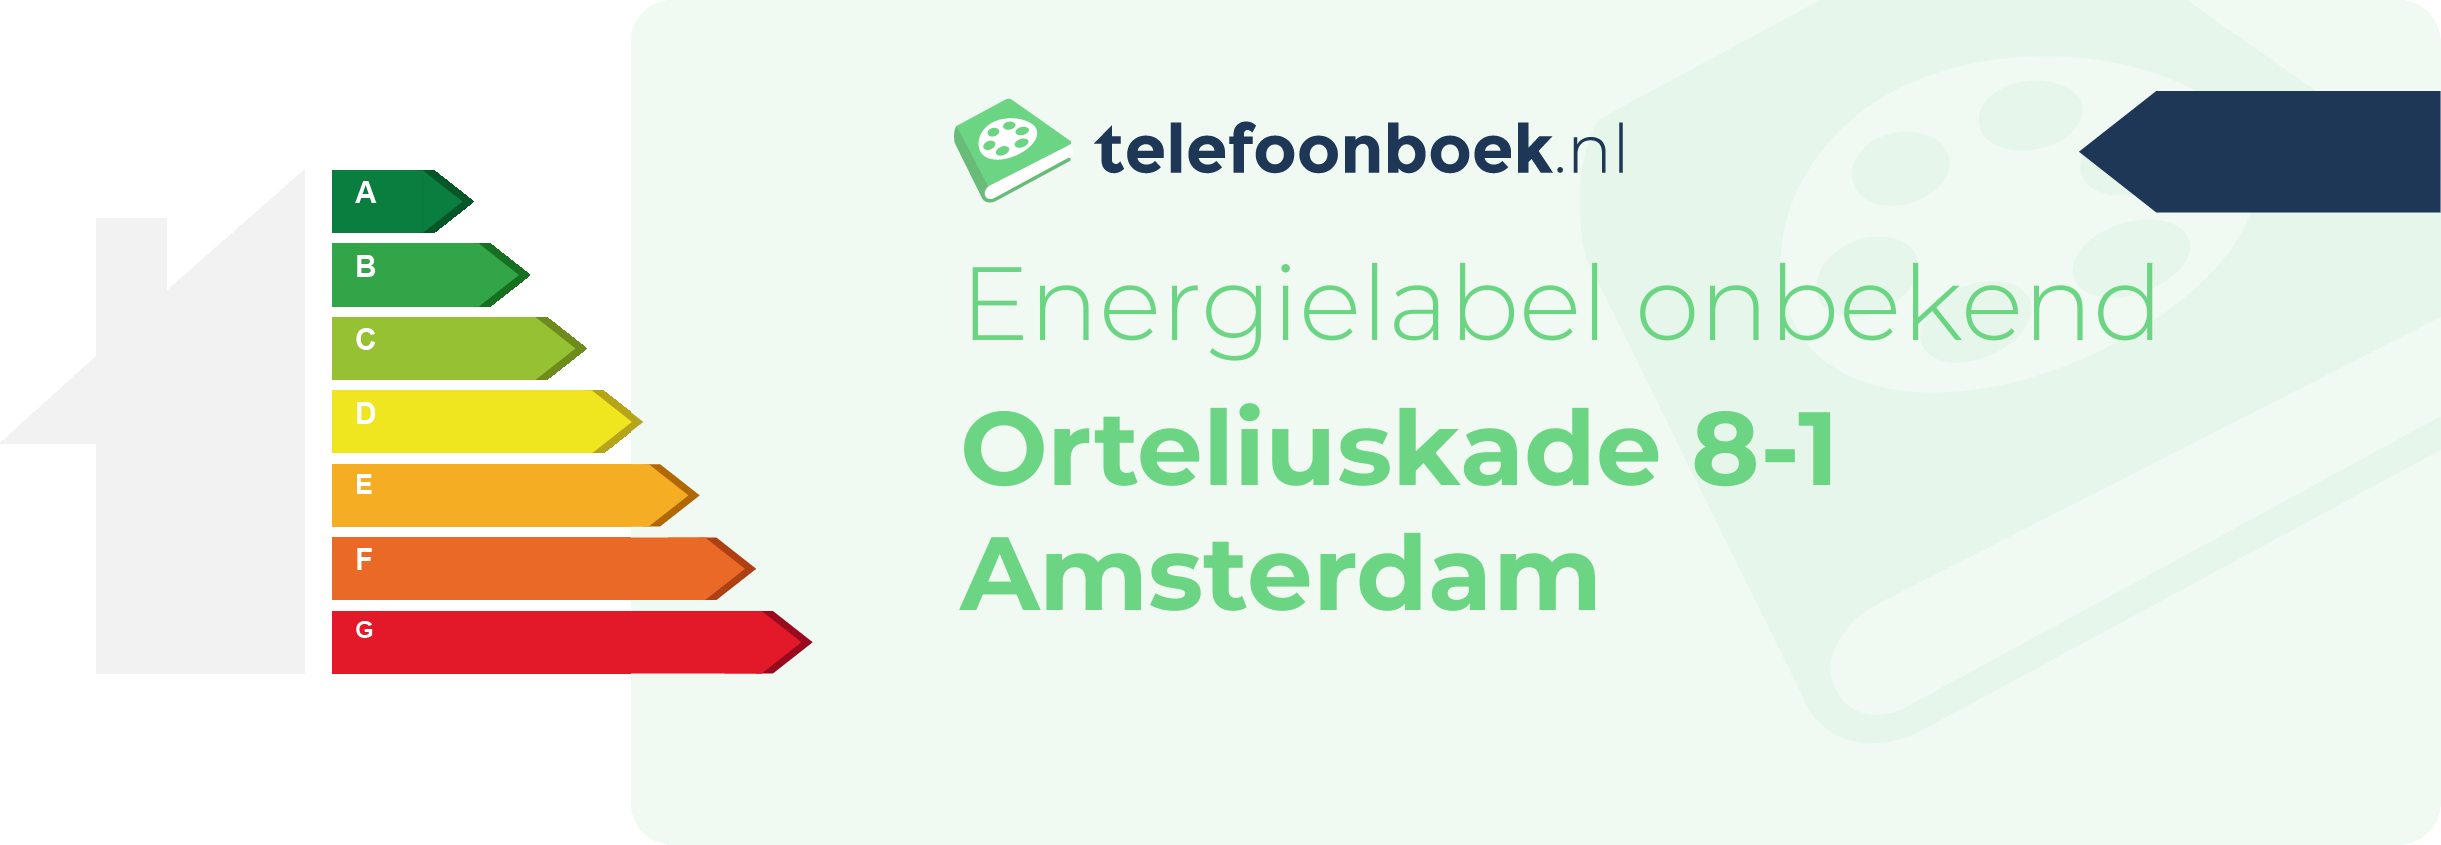 Energielabel Orteliuskade 8-1 Amsterdam